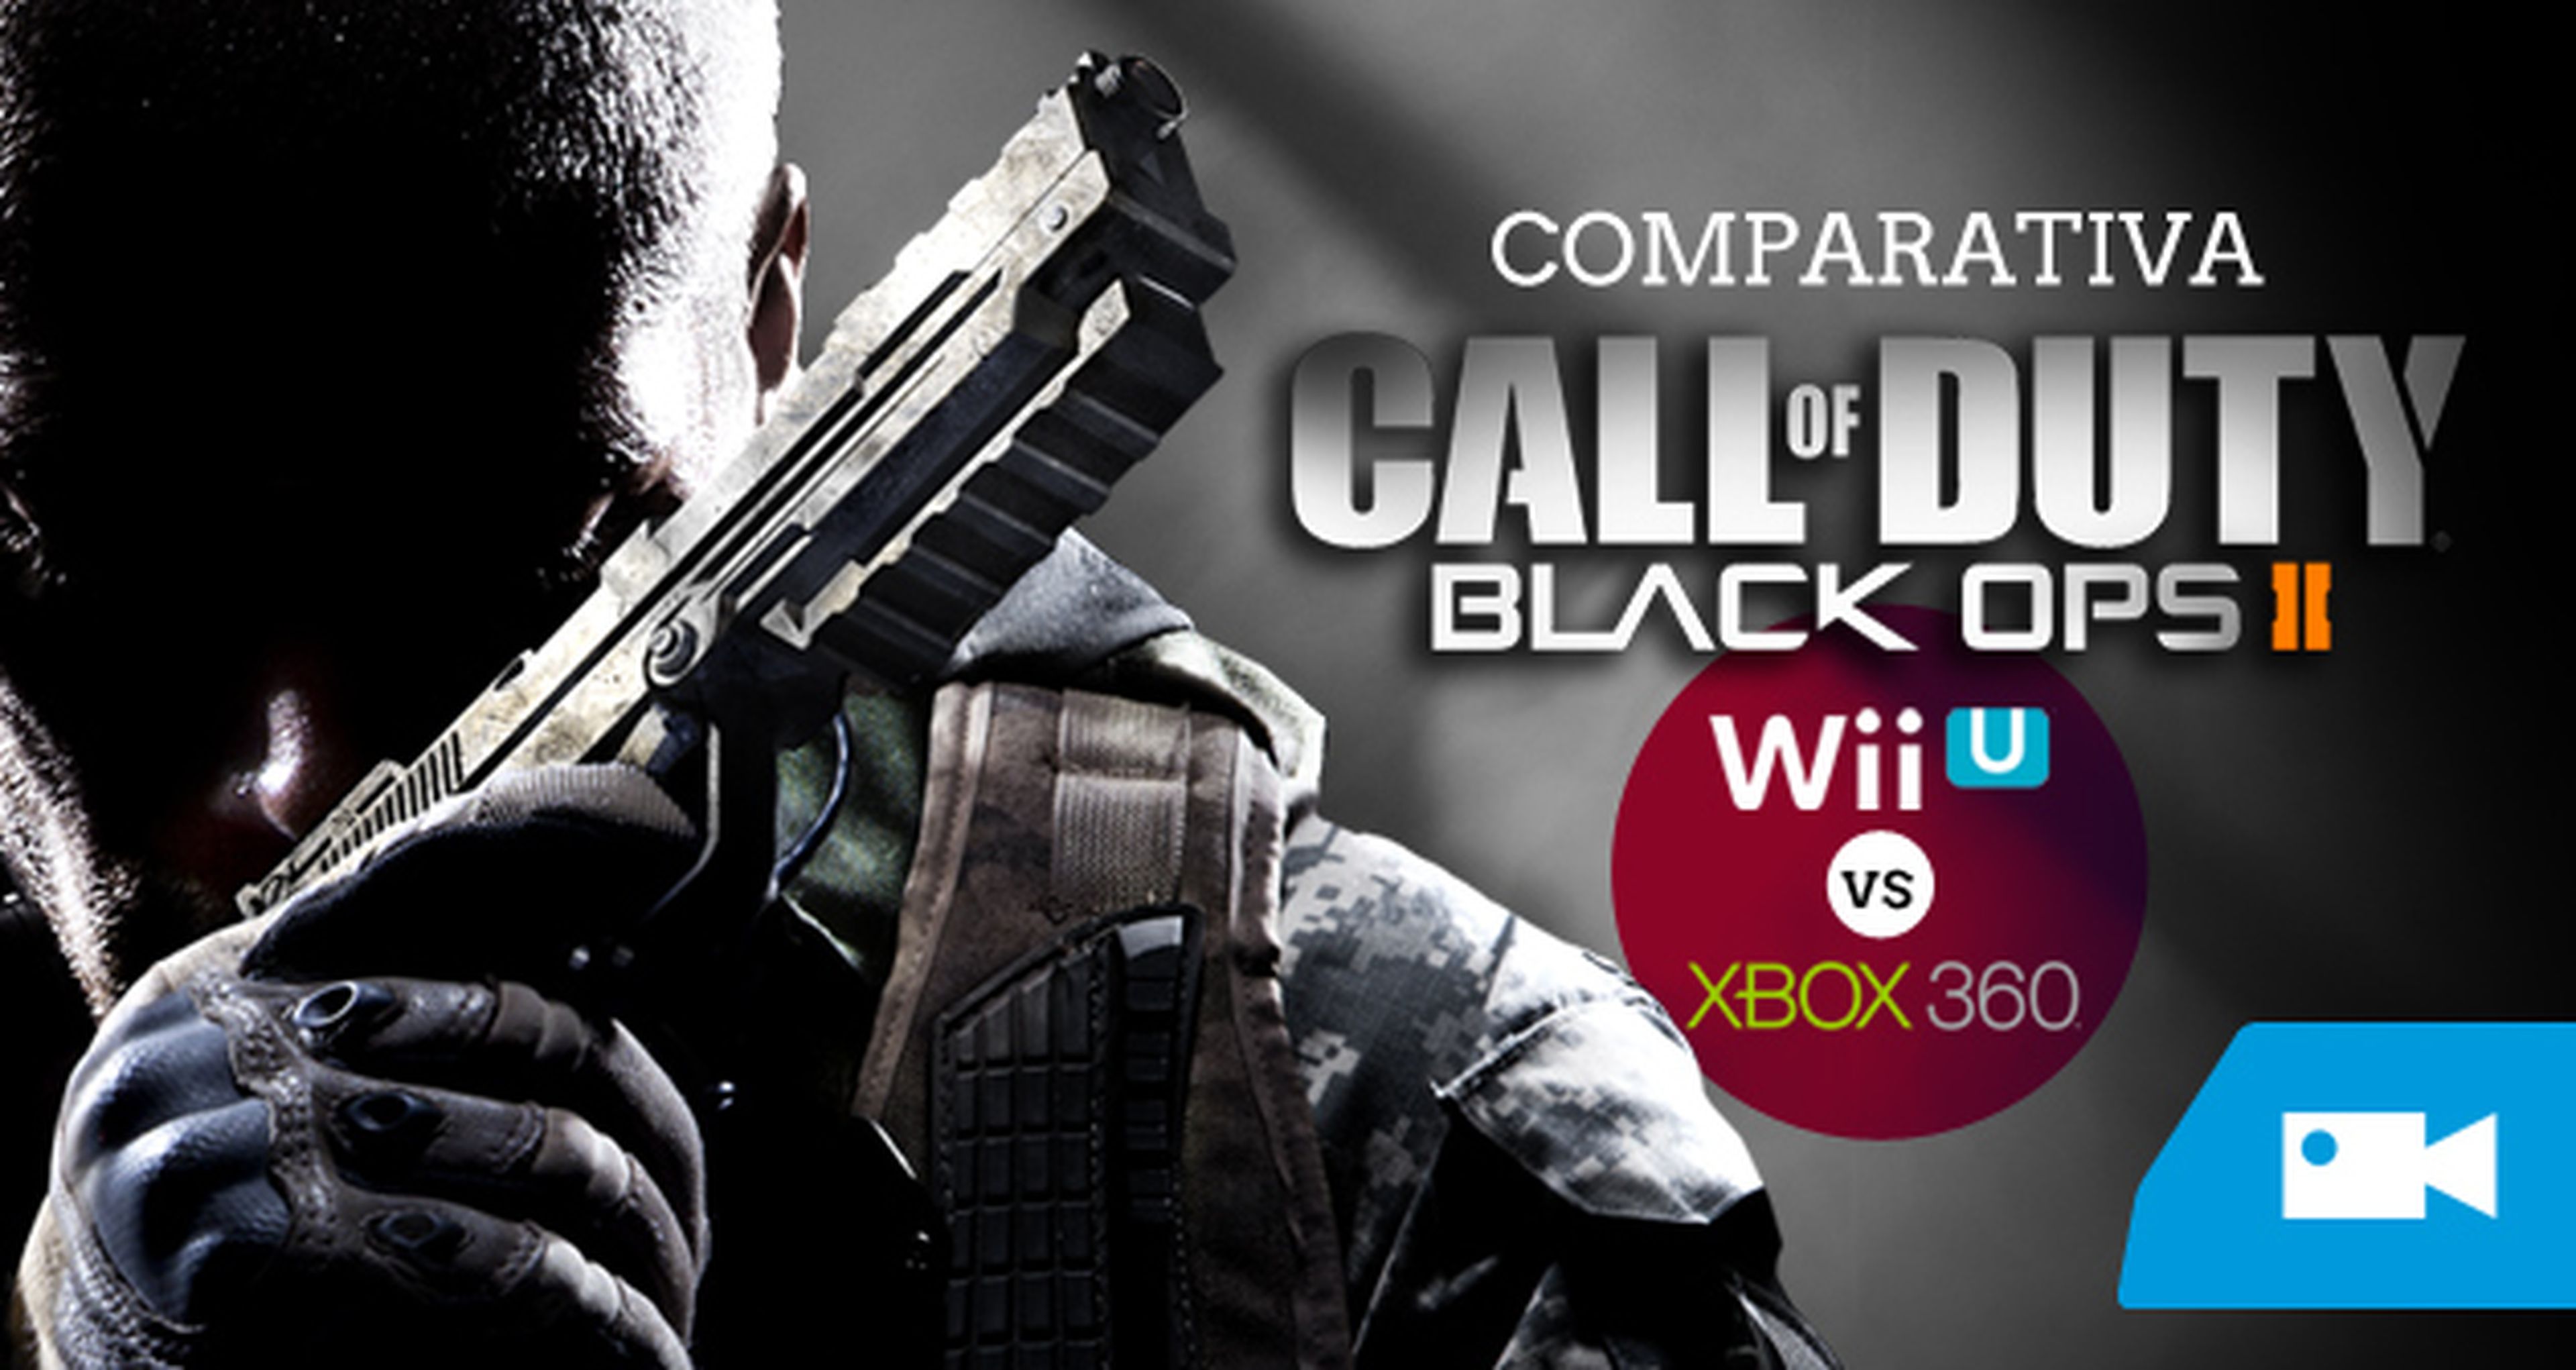 Call of Duty Black Ops II: Wii U vs Xbox 360